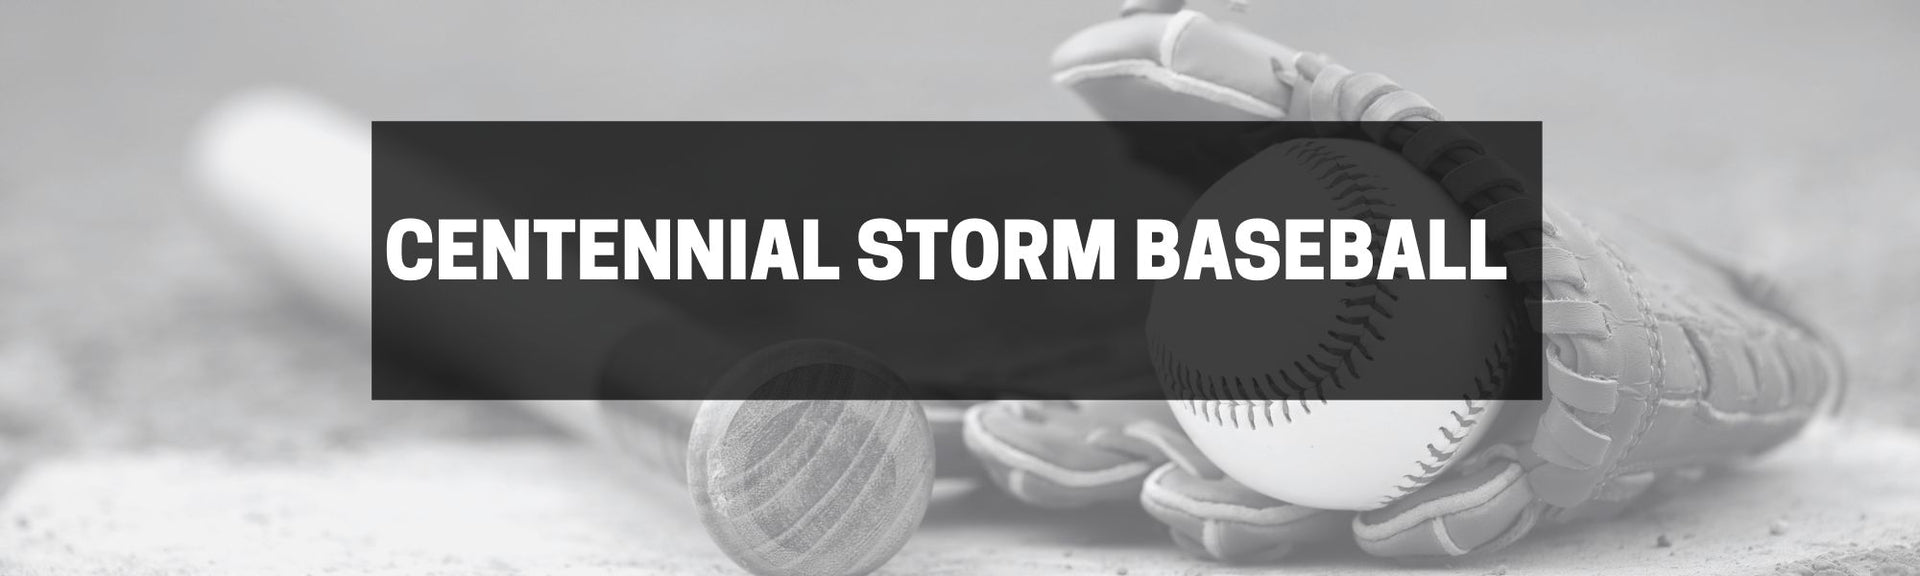 Centennial Storm Baseball